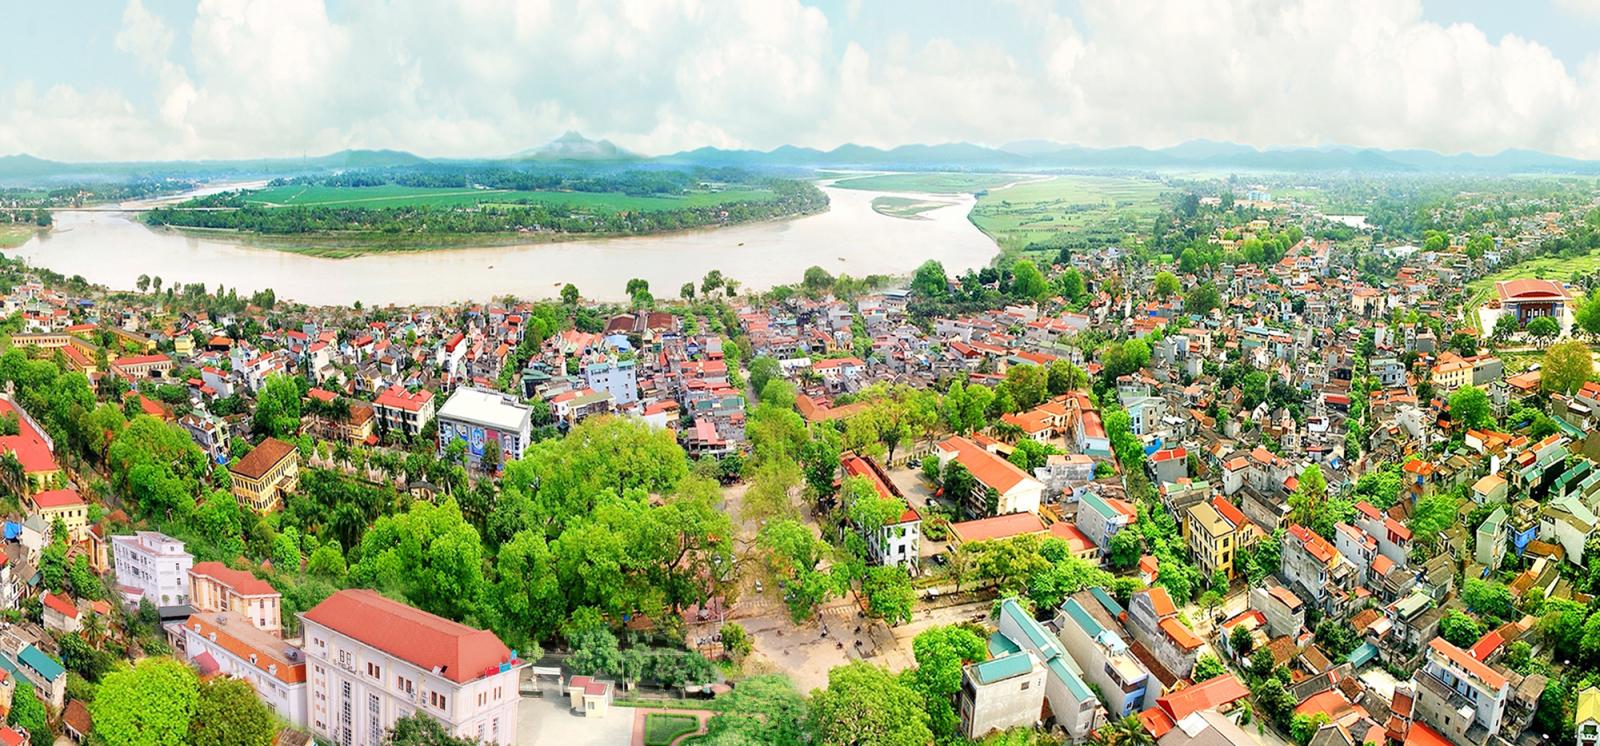 một góc tỉnh Phú Thọ với nhiều nhà ở nhìn từ trên cao